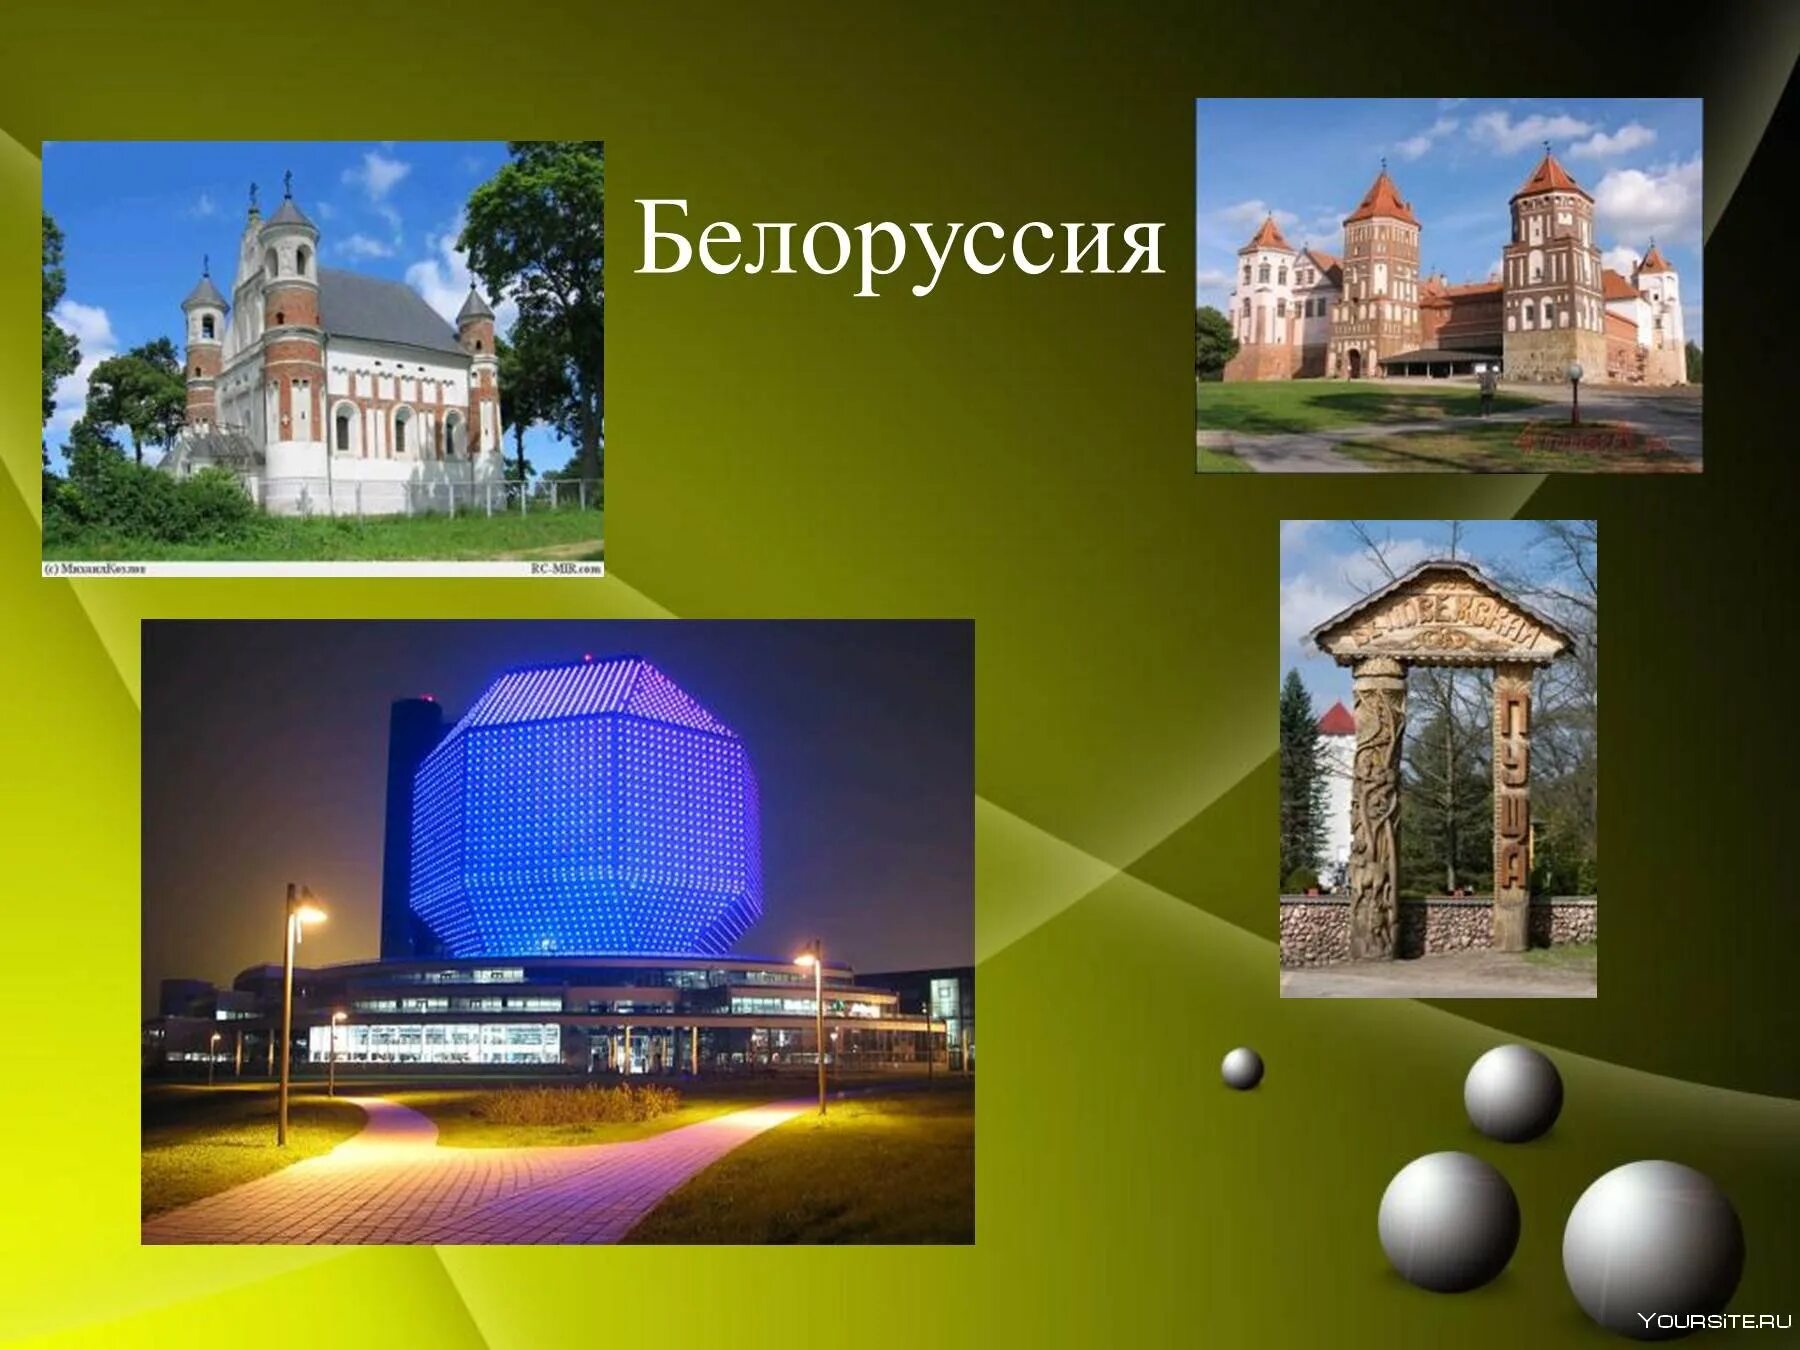 Проект про Белоруссию. Белоруссия достопримечательности окружающий мир. Белоруссия сосед России. Наши ближайшие соседи Белоруссия.